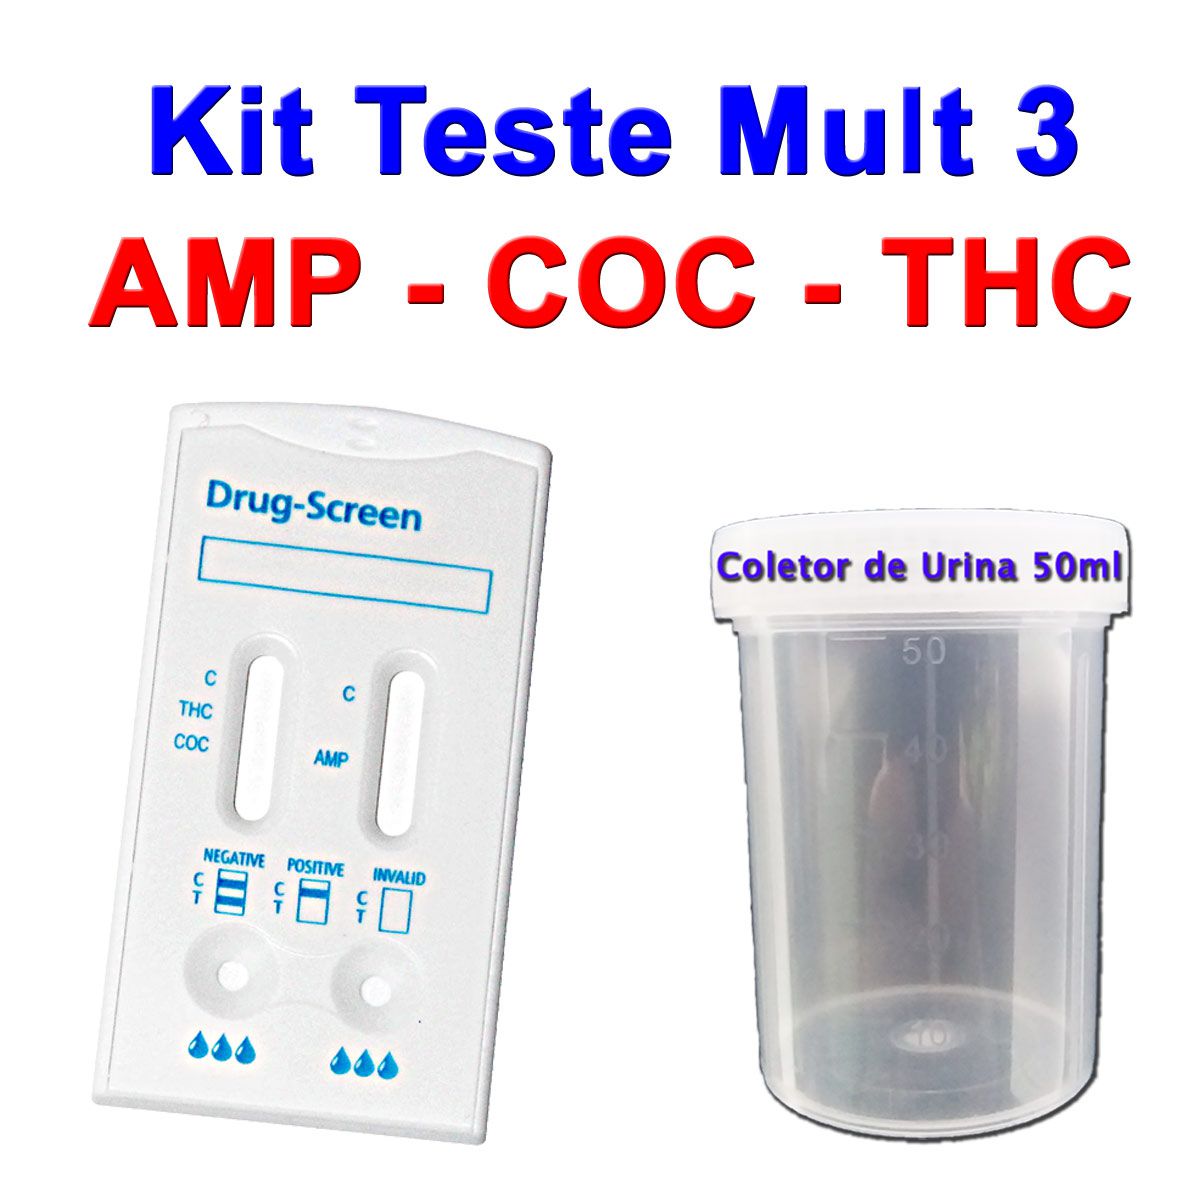 05 Kits Para Teste Mult 3 AMP+COC+THC  - Testes Para COVID e Drogas. Máscaras Descartáveis e Suplementos e Anti Tabaco 